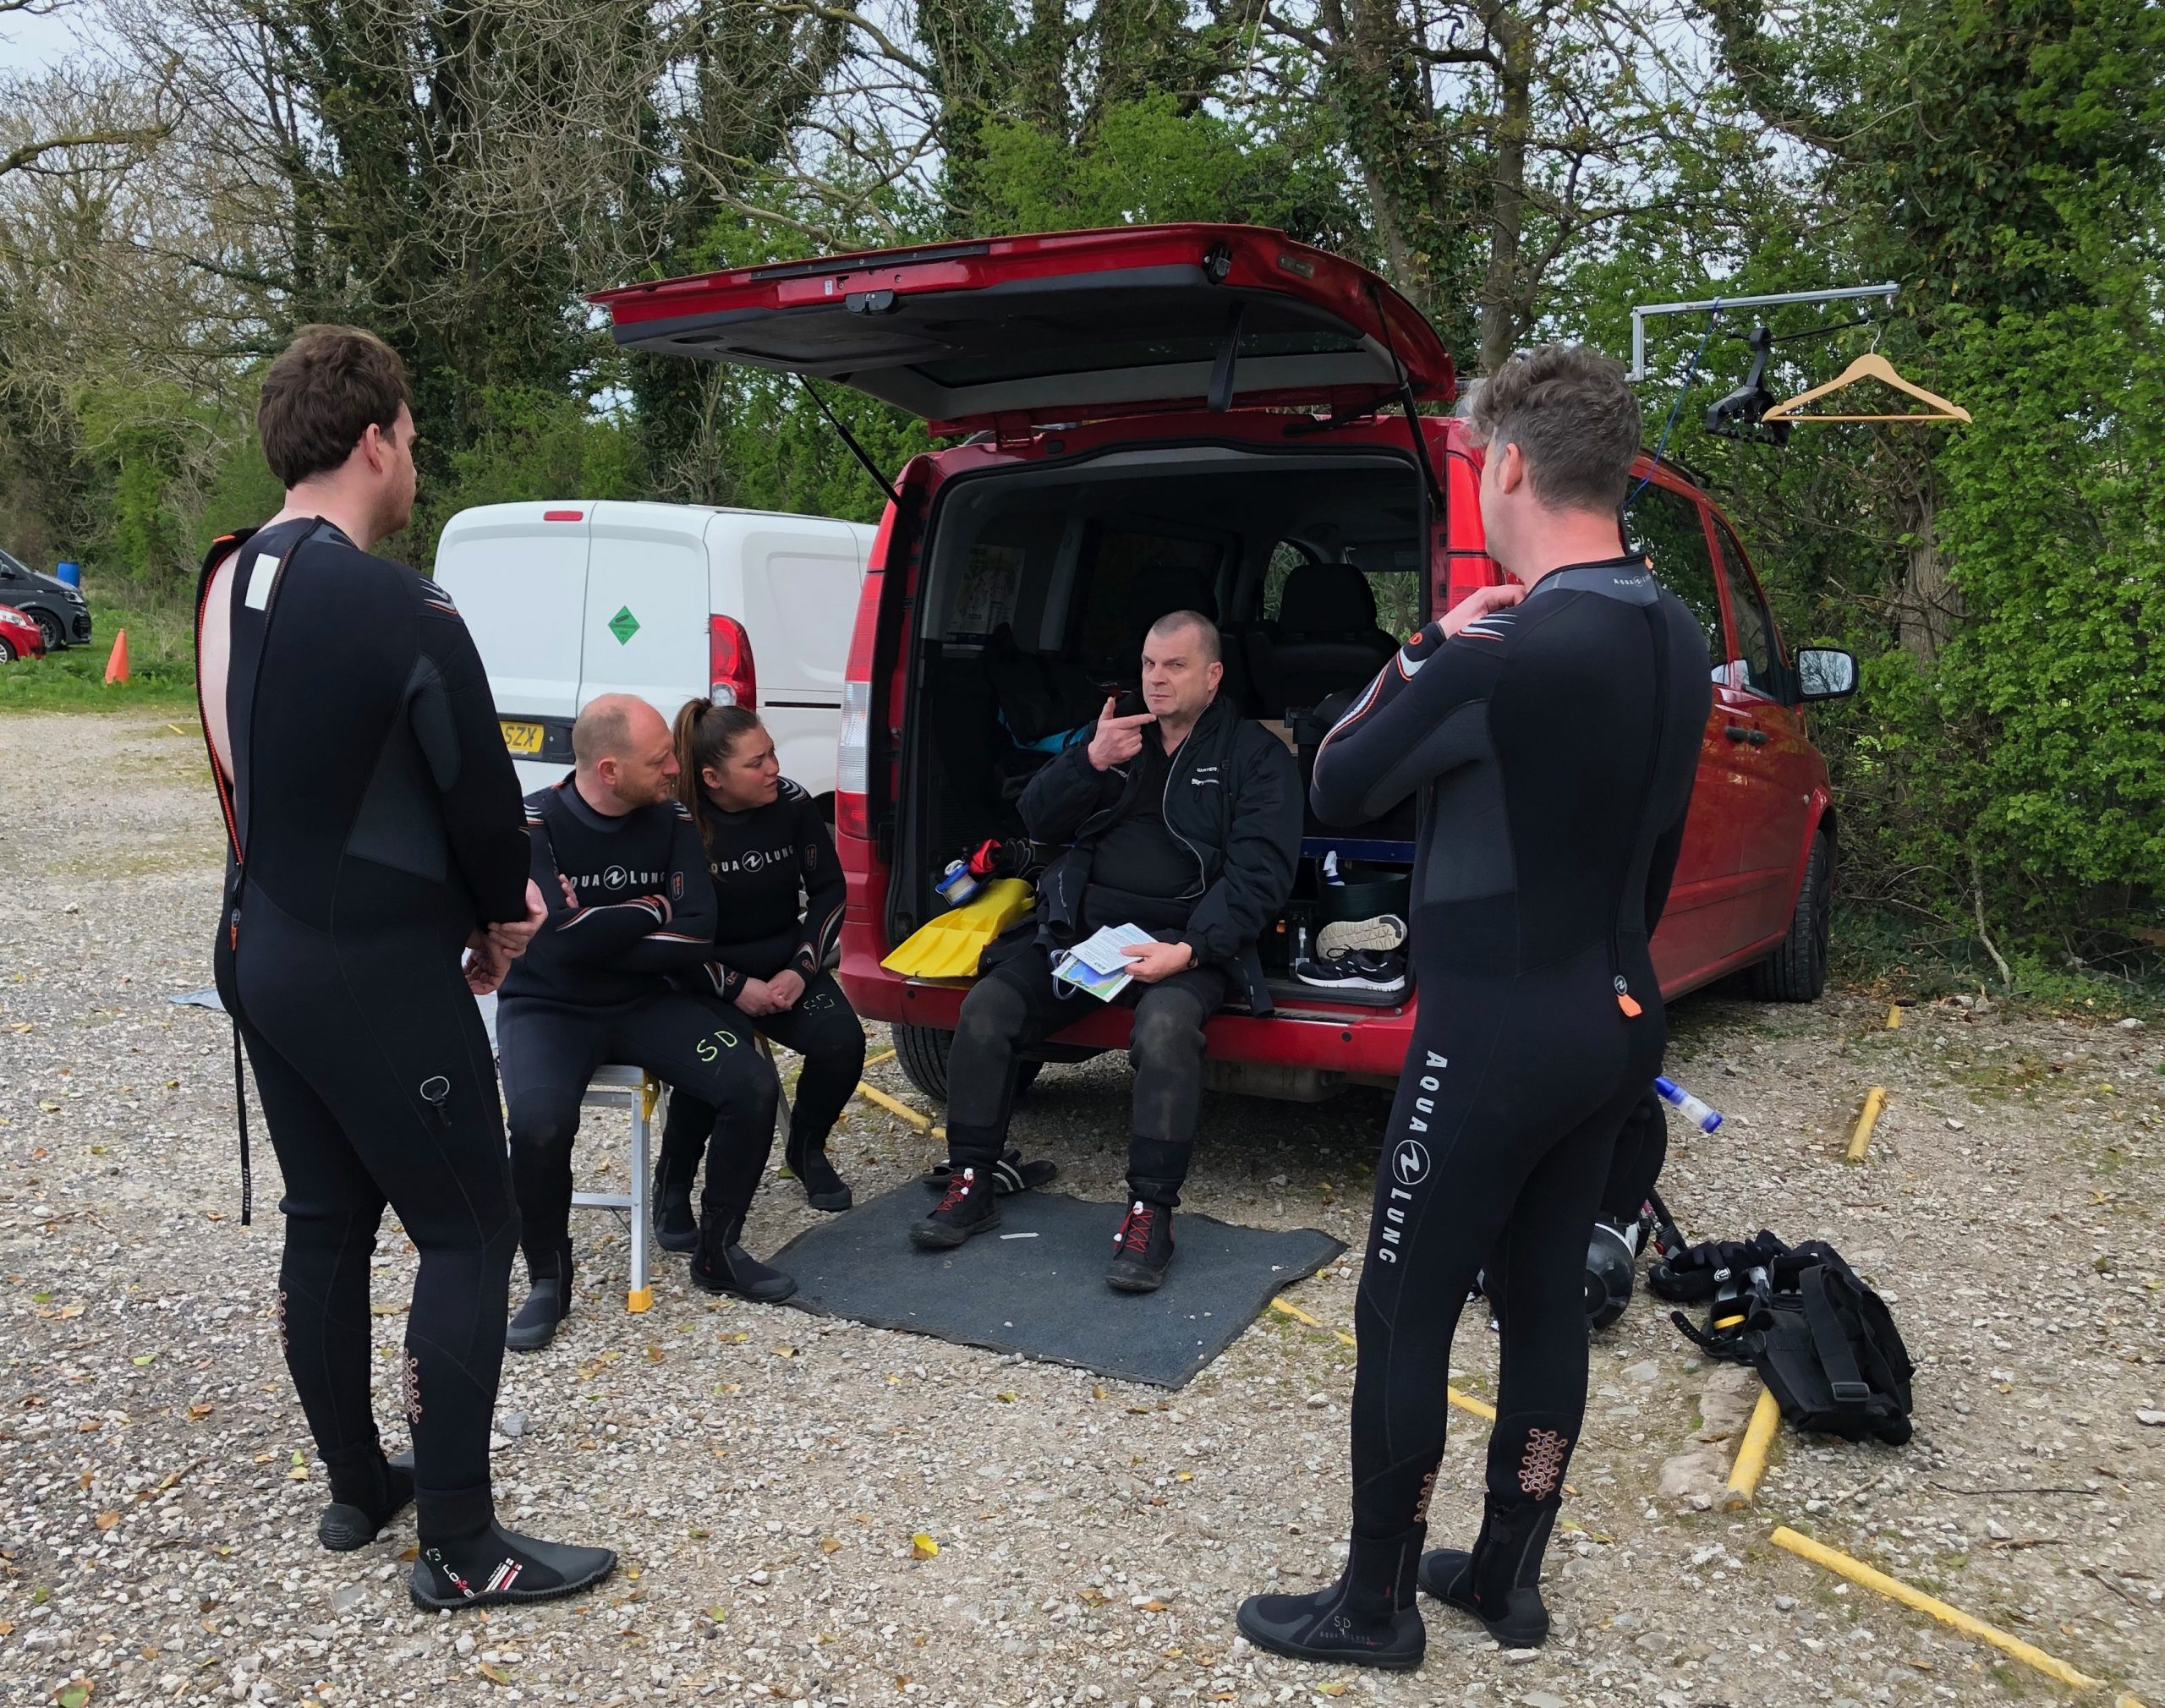 PADI Divers at Capernwray getting briefed